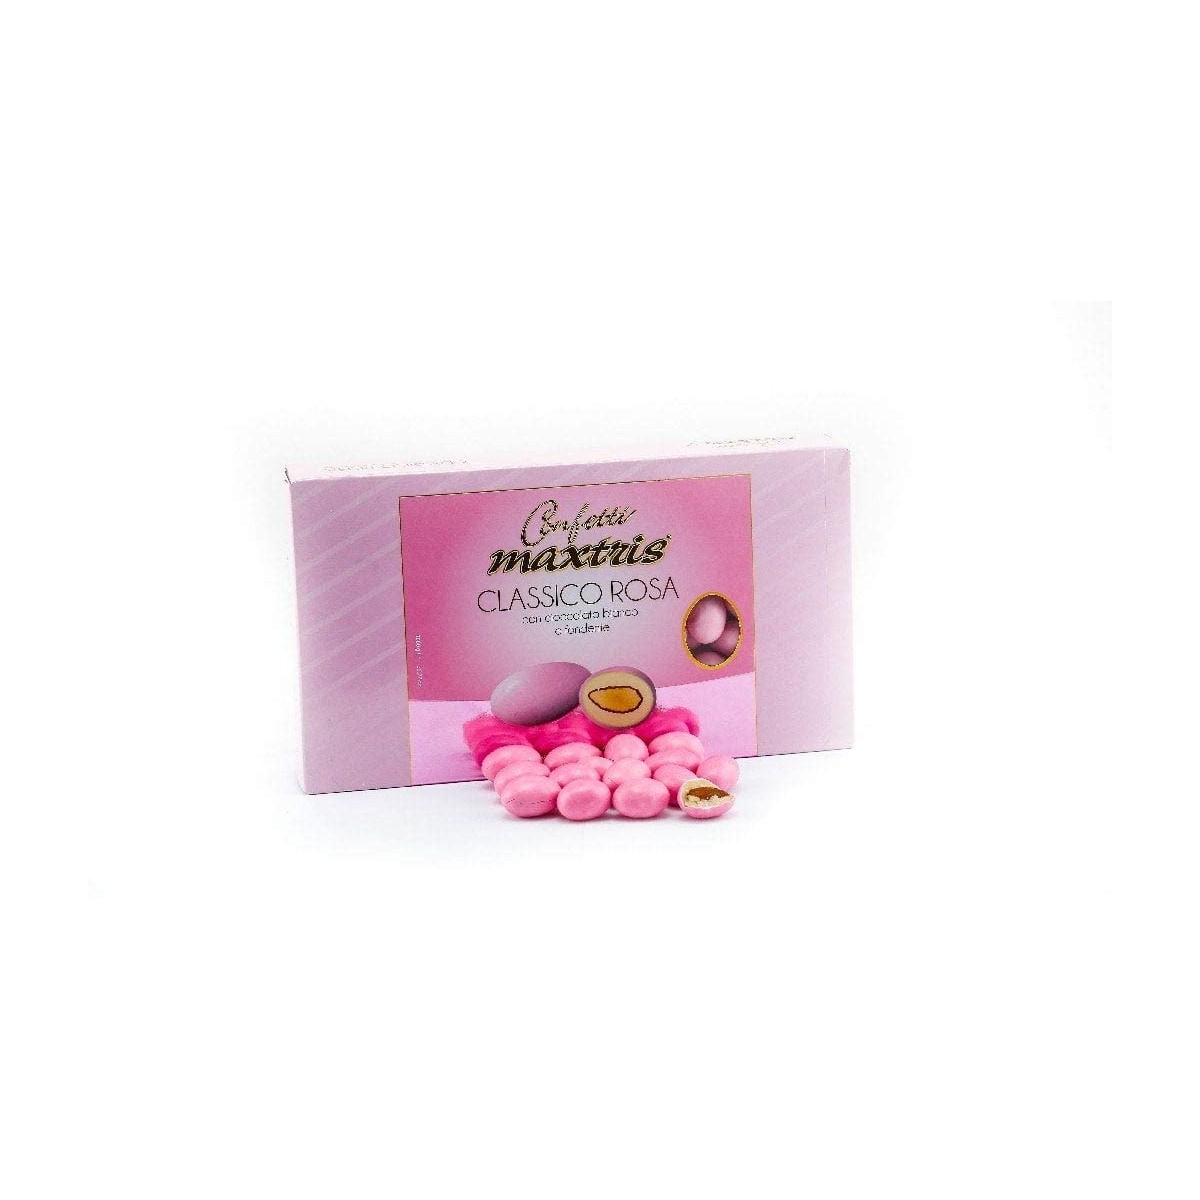 Confetti classici rosa Maxtris da 1 kg, made in Italy